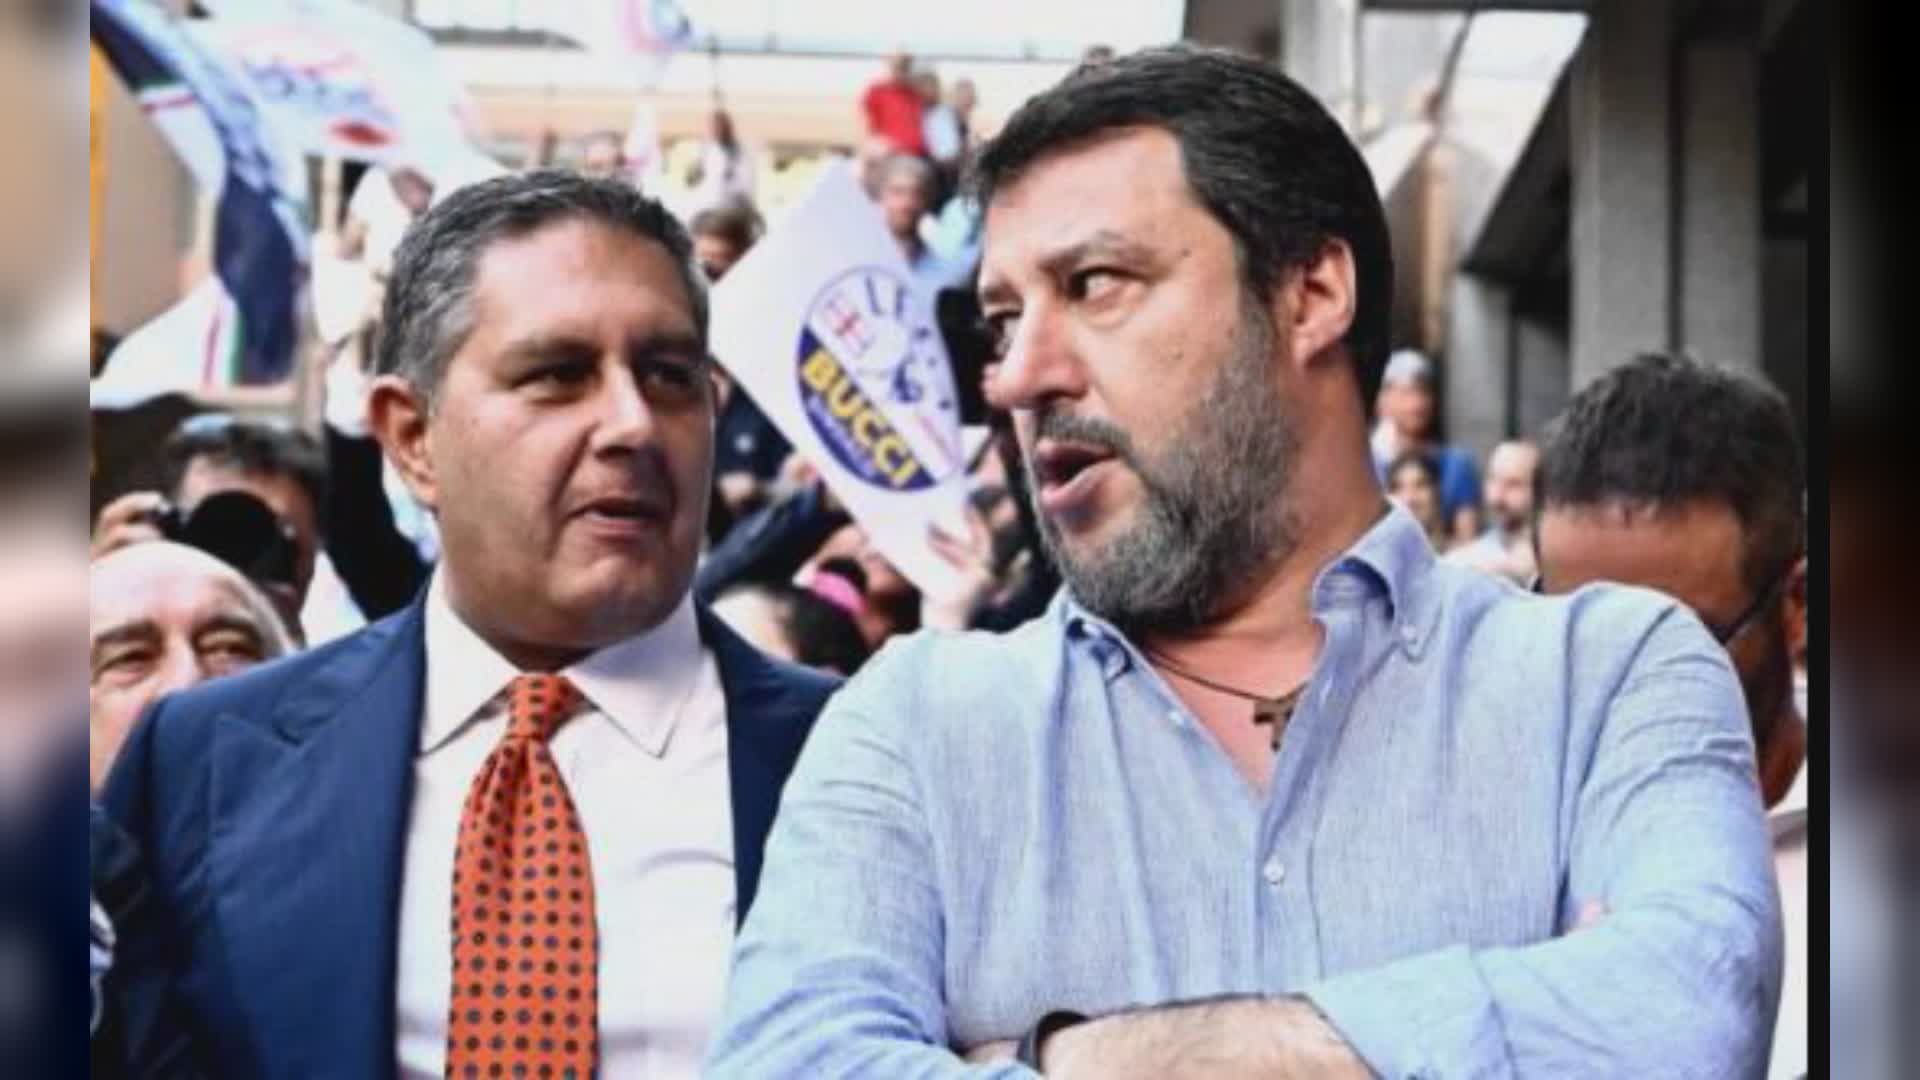 Caso Toti, Salvini: "Domiciliari a oltranza? Roba sovietica"